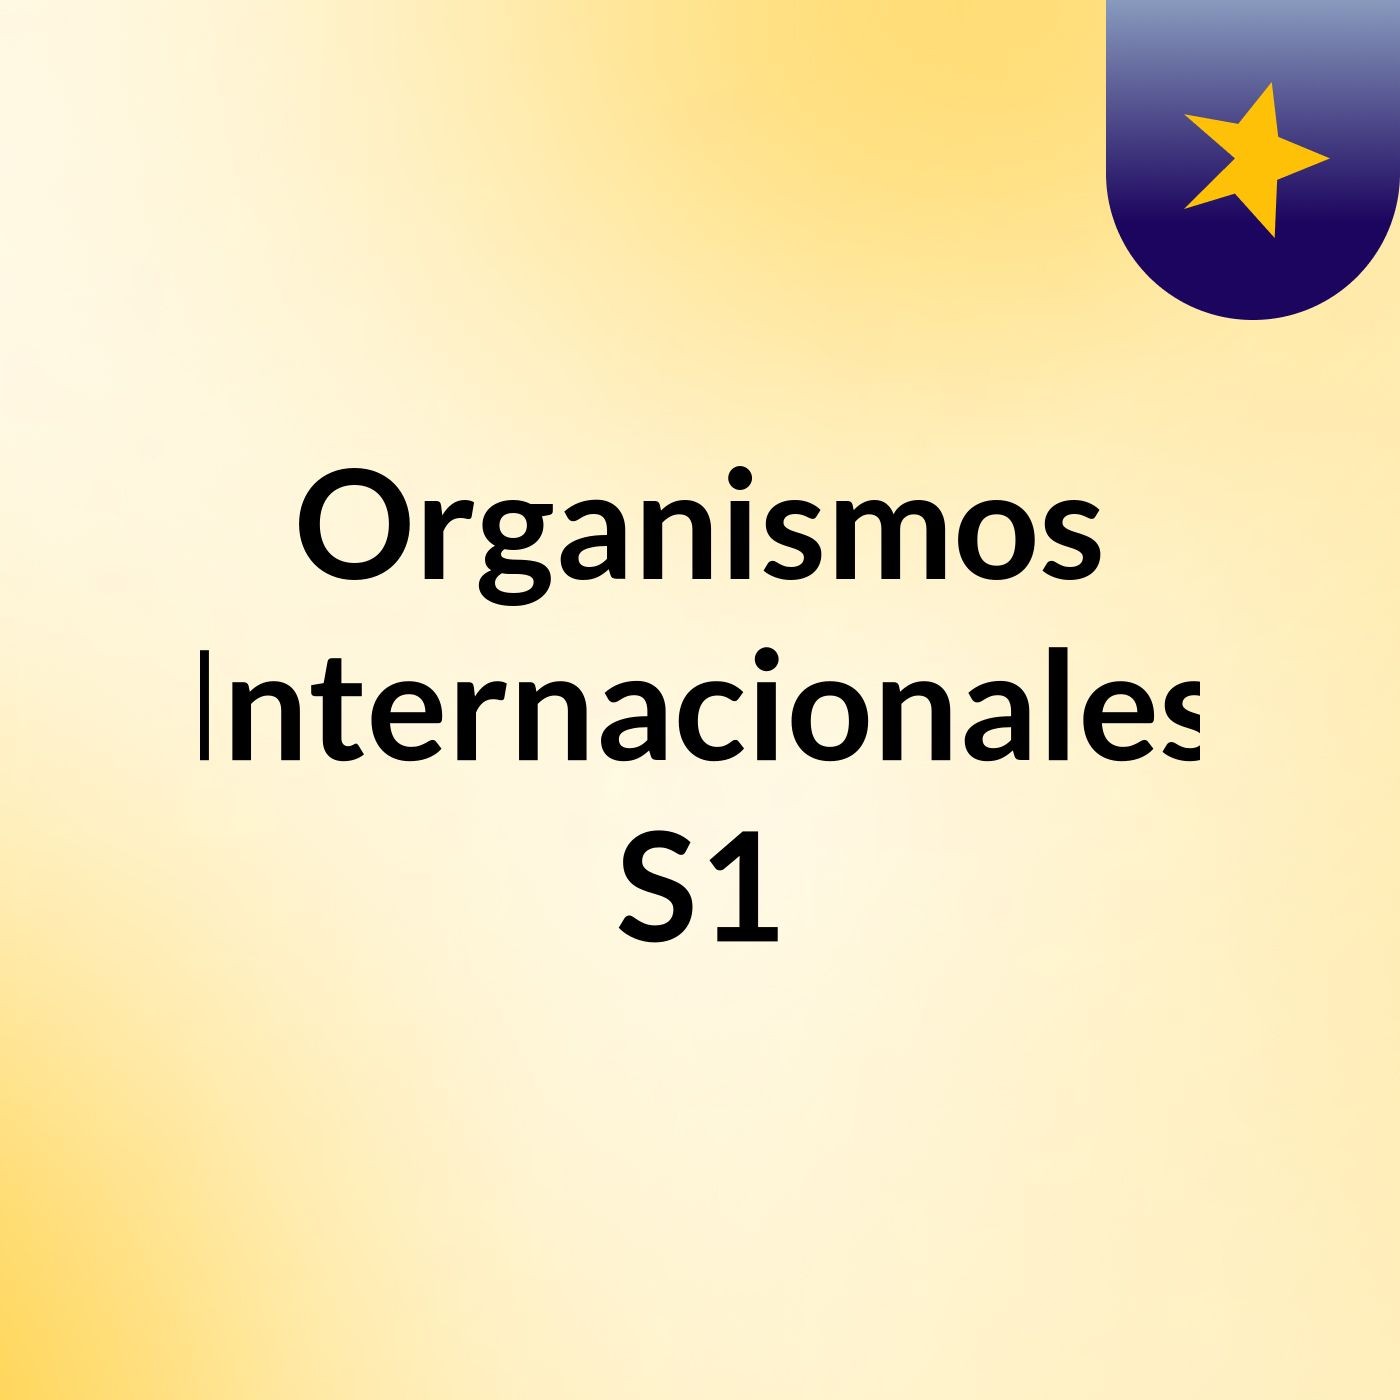 Organismos Internacionales S1